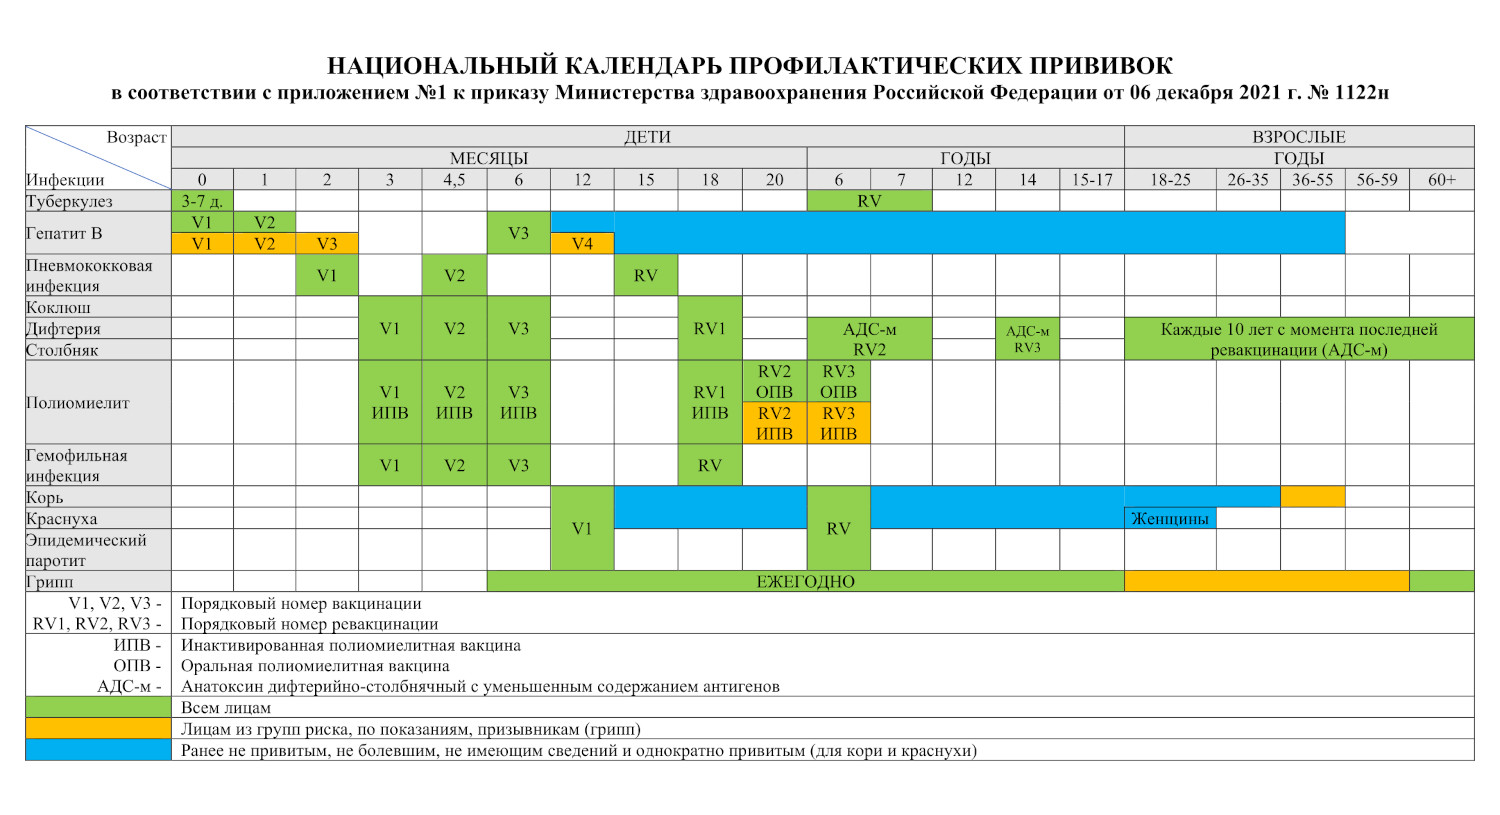 национальный календарь профилактических прививок приказ